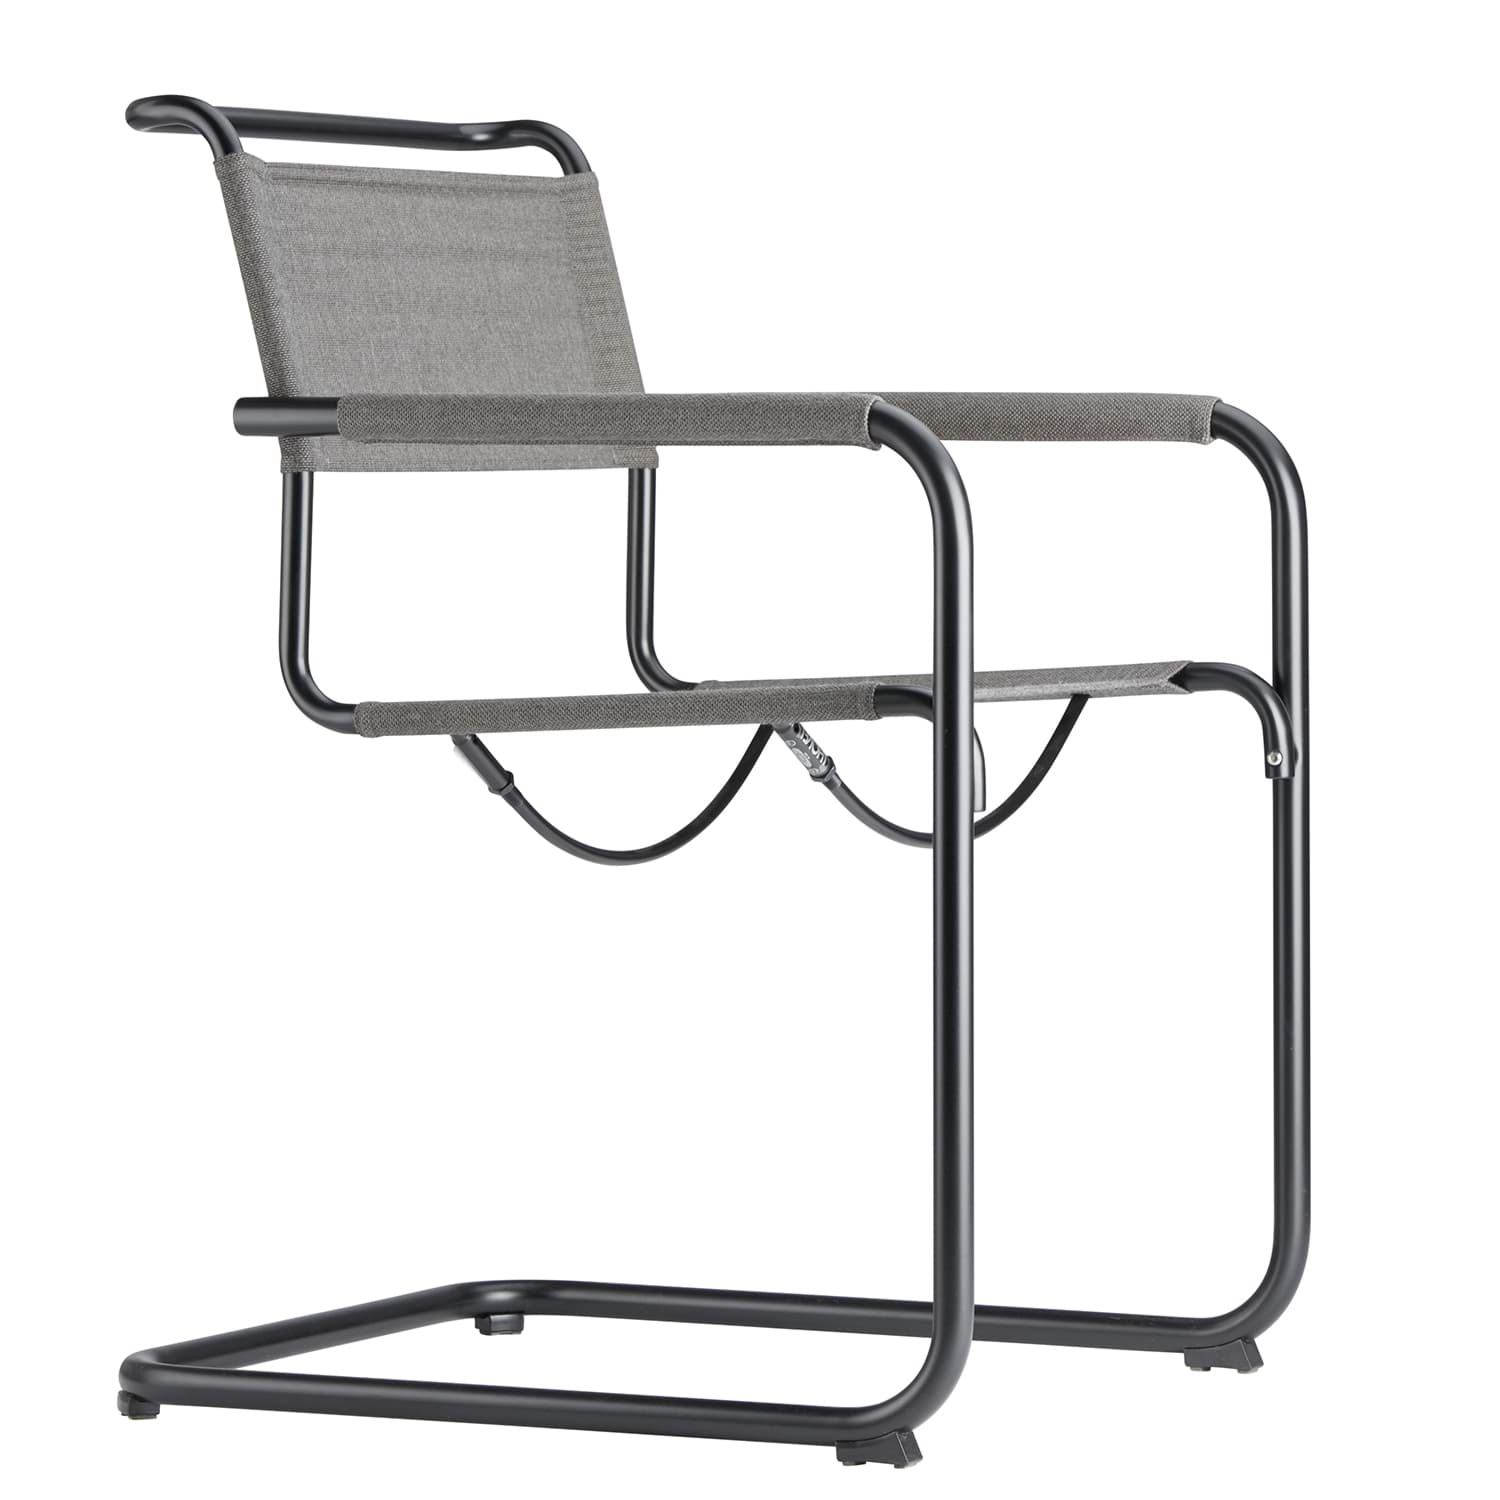 S 34All Seasons悬臂椅-Mart Stam的图片
